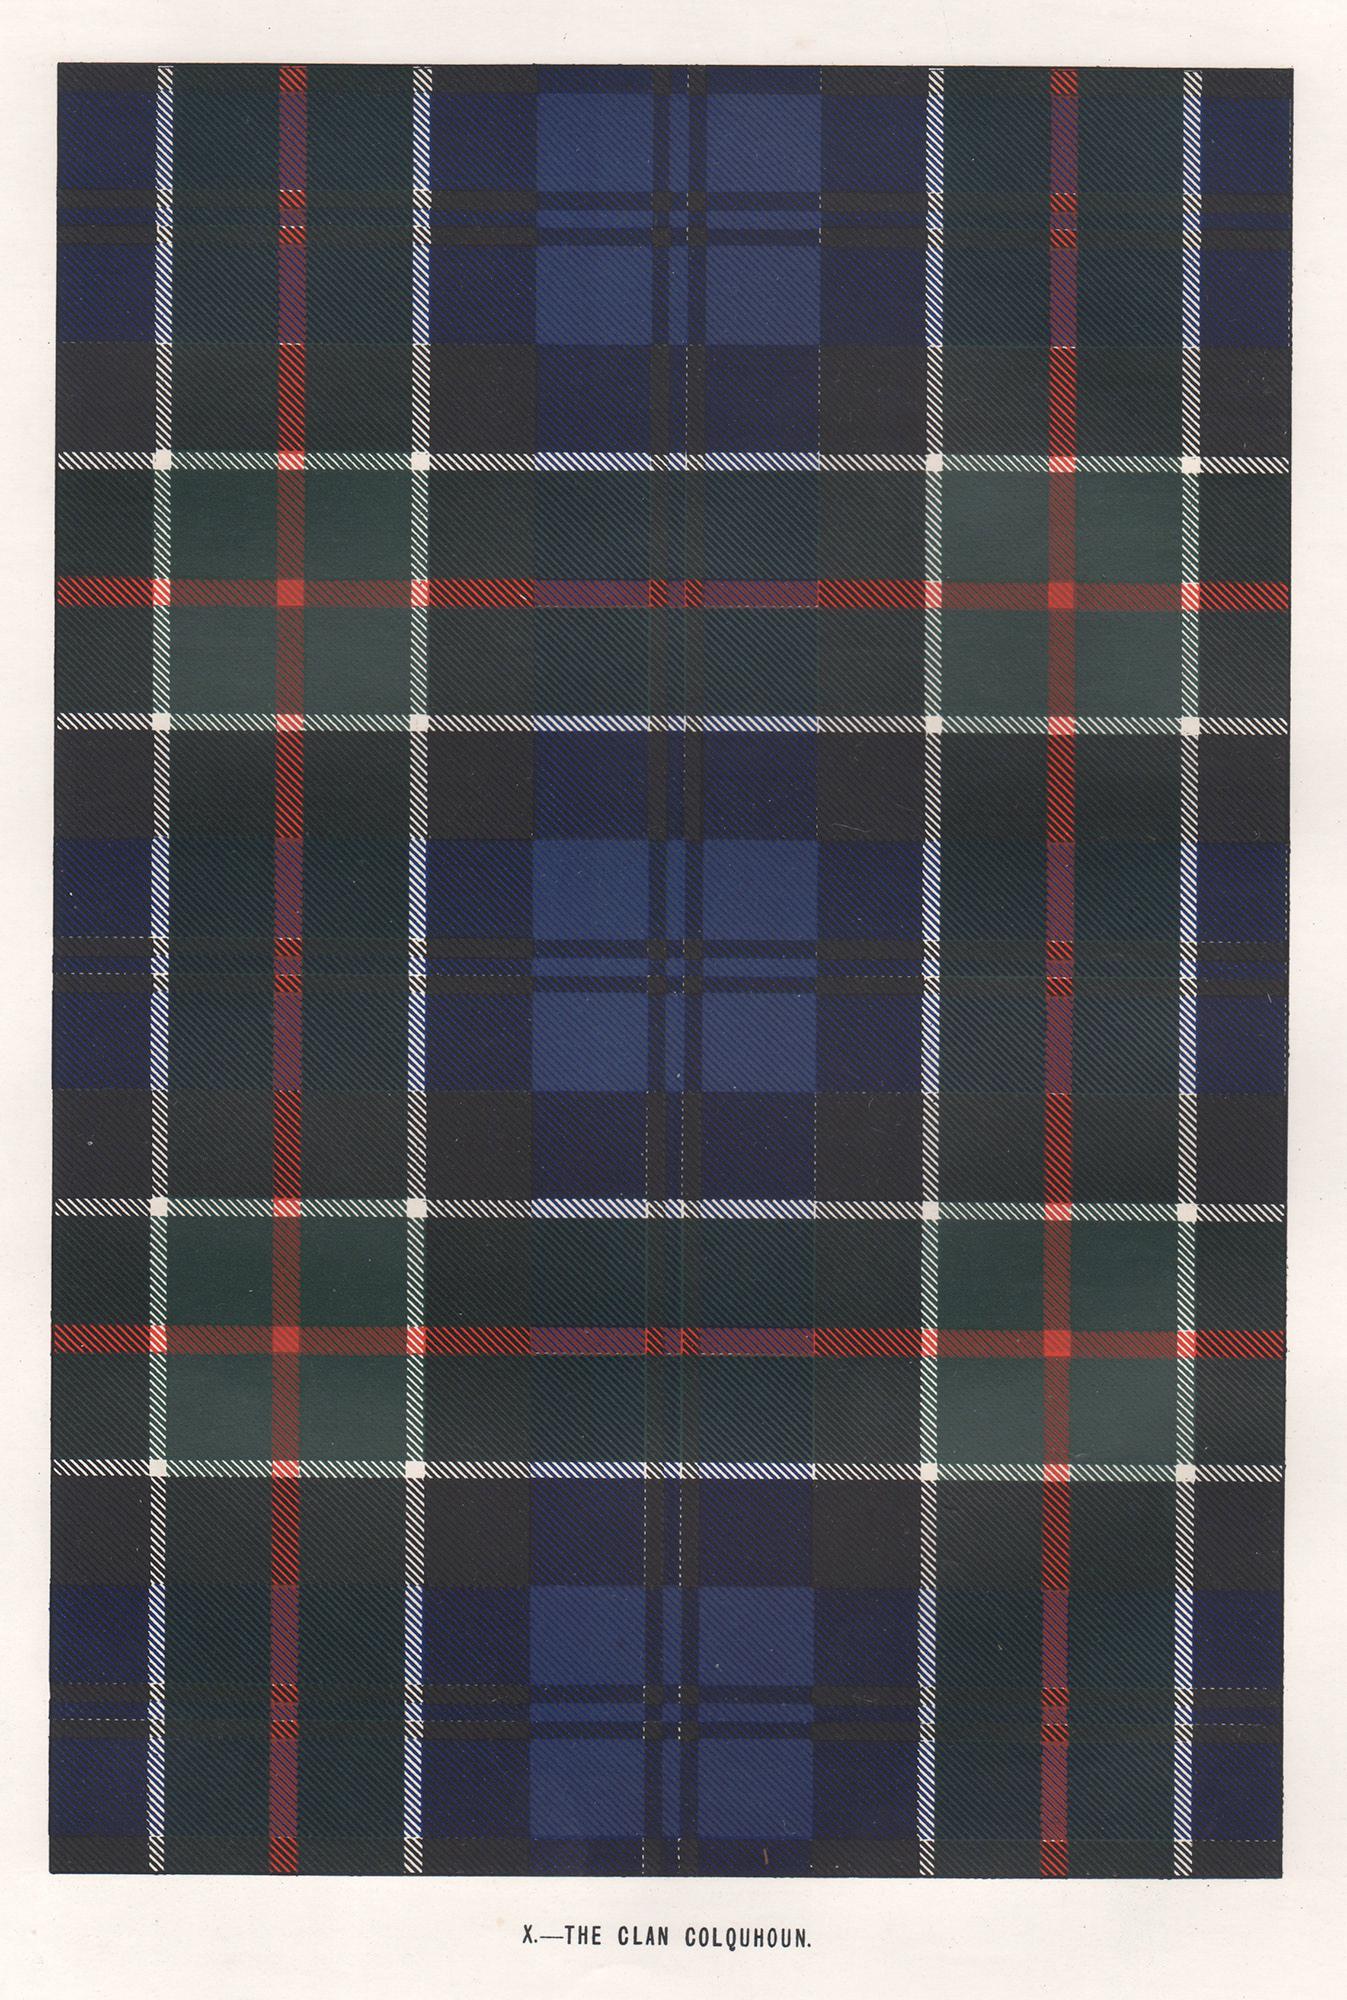 Abstract Print Unknown - Lithographie du clan Colquhoun (tartan), Écosse écossaise de conception artistique